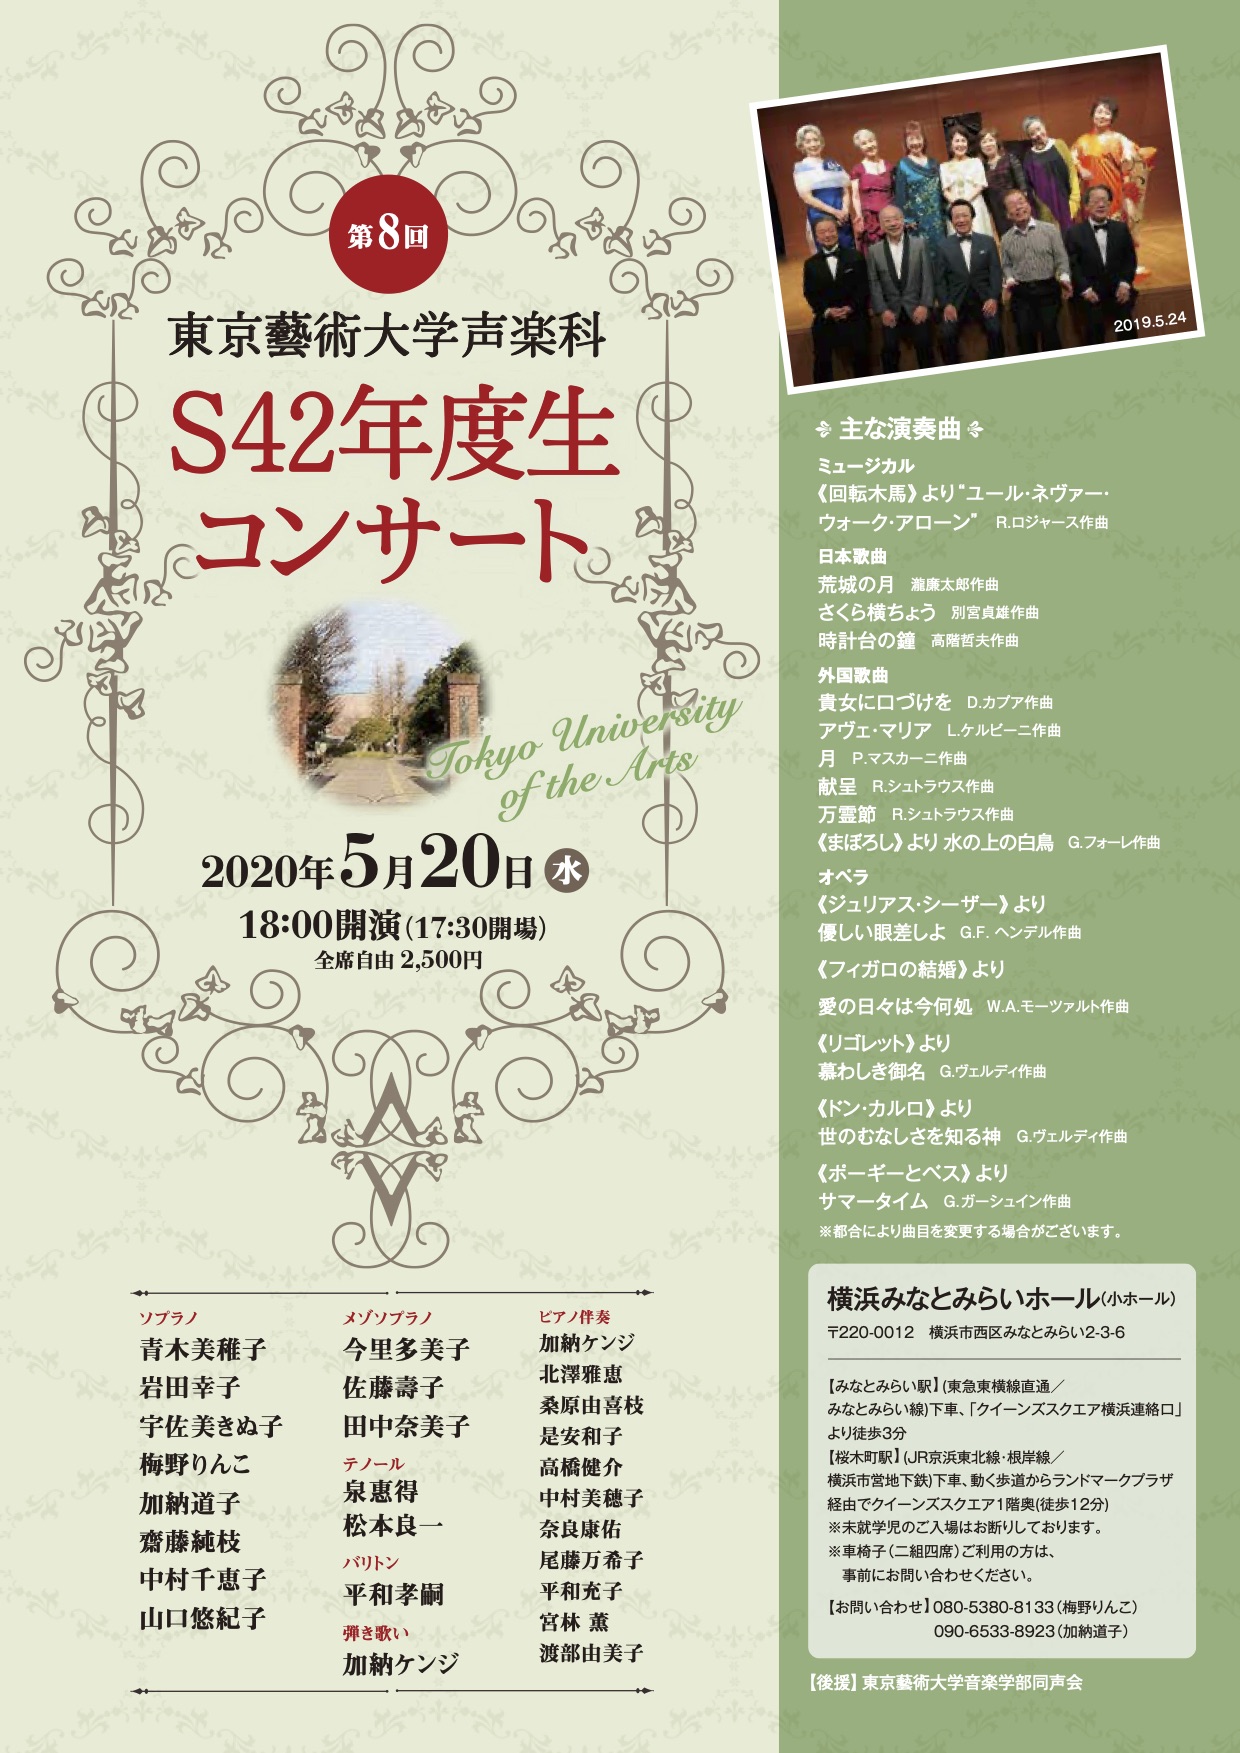 第8回 東京藝術大学声楽科S42年度生コンサート